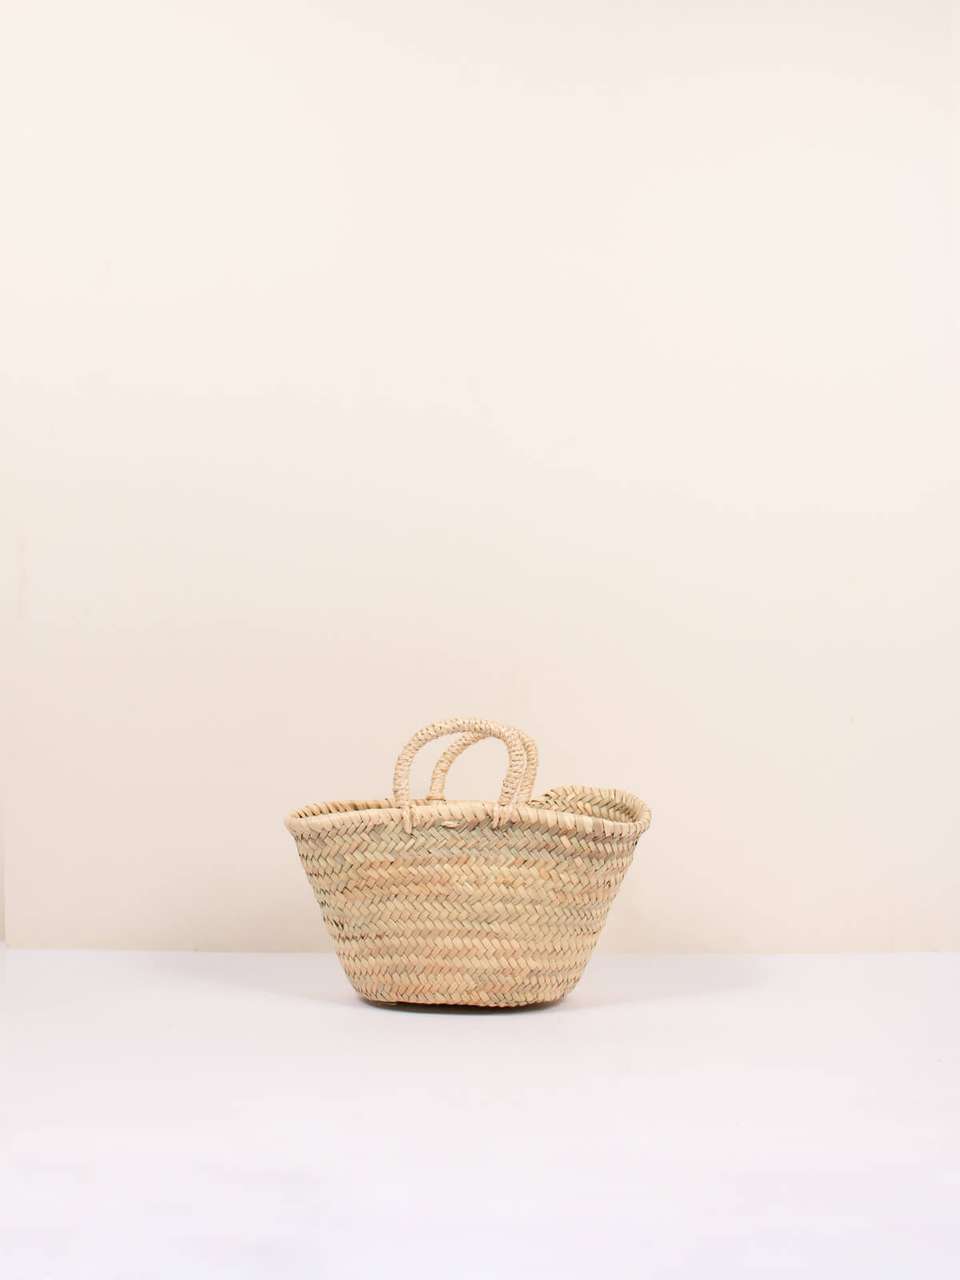 Market Baskets image